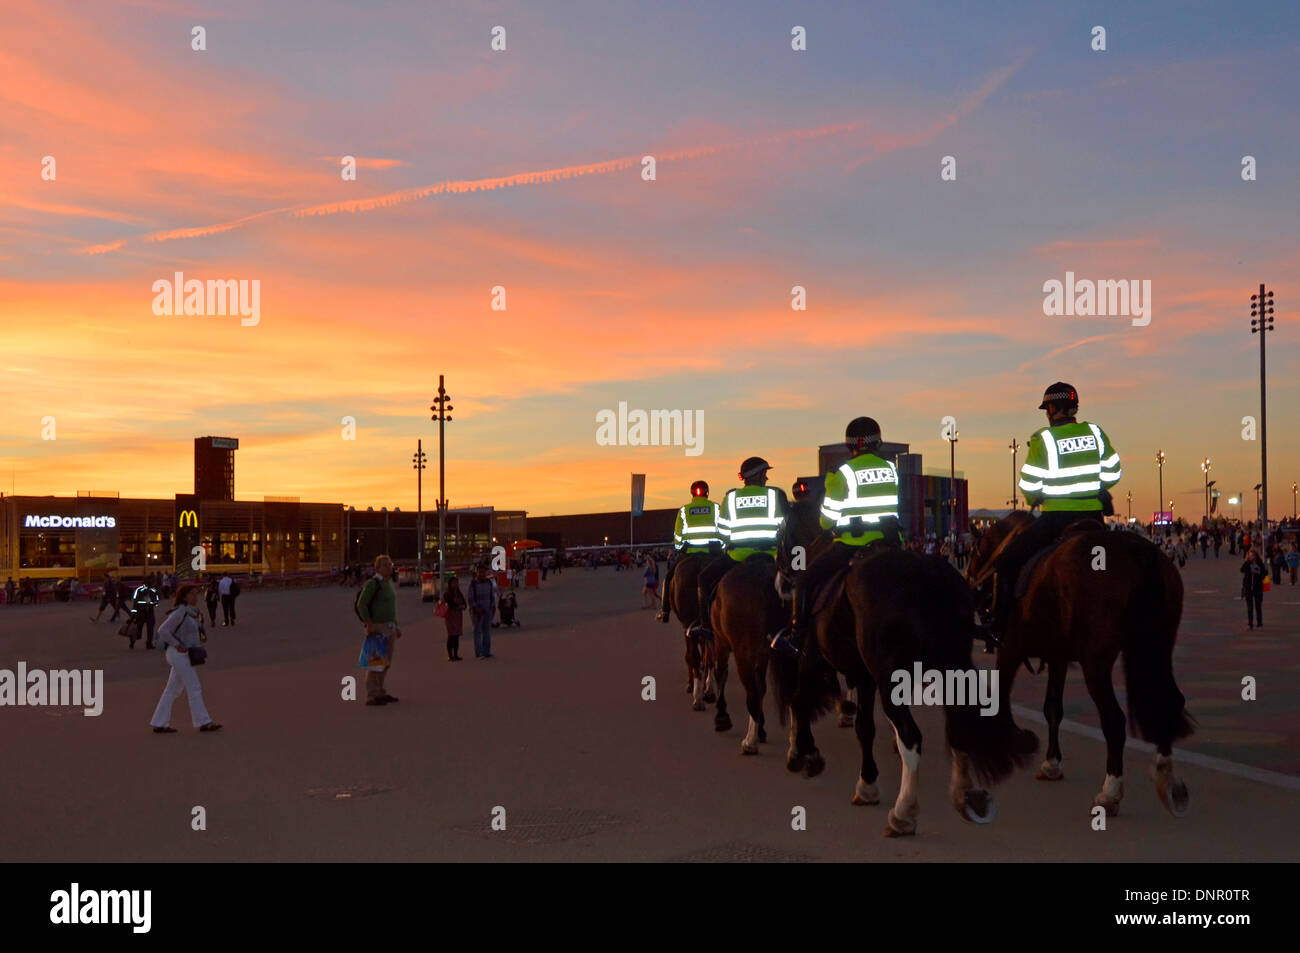 Des policiers patrouillent dans le dos du cheval le soir dans les vêtements haute visibilité du parc olympique de Londres 2012 reflétant la haute visibilité de la lumière vis-à-vis de l'Angleterre Banque D'Images